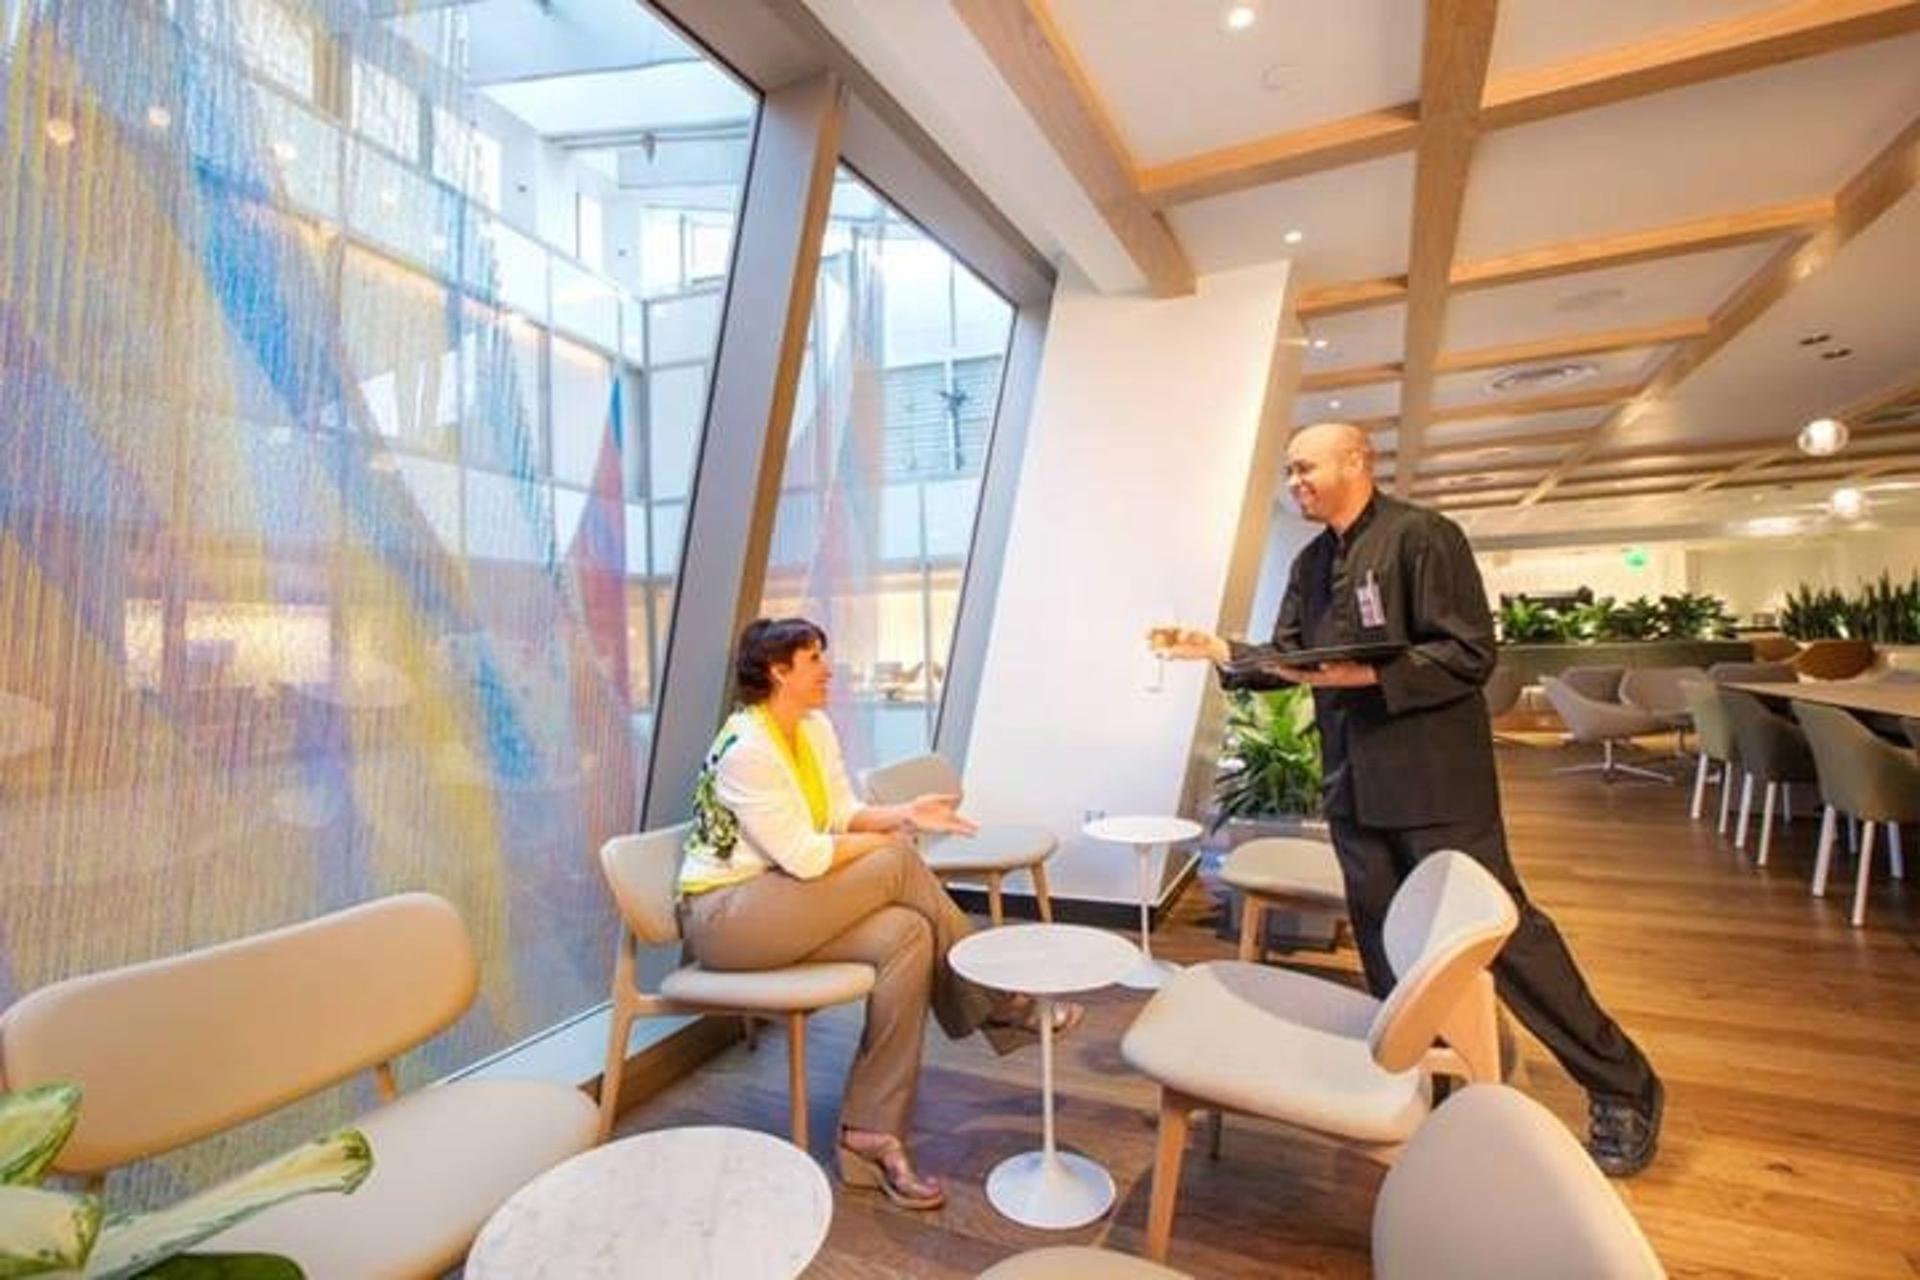 oneworld International Business Lounge image 10 of 21